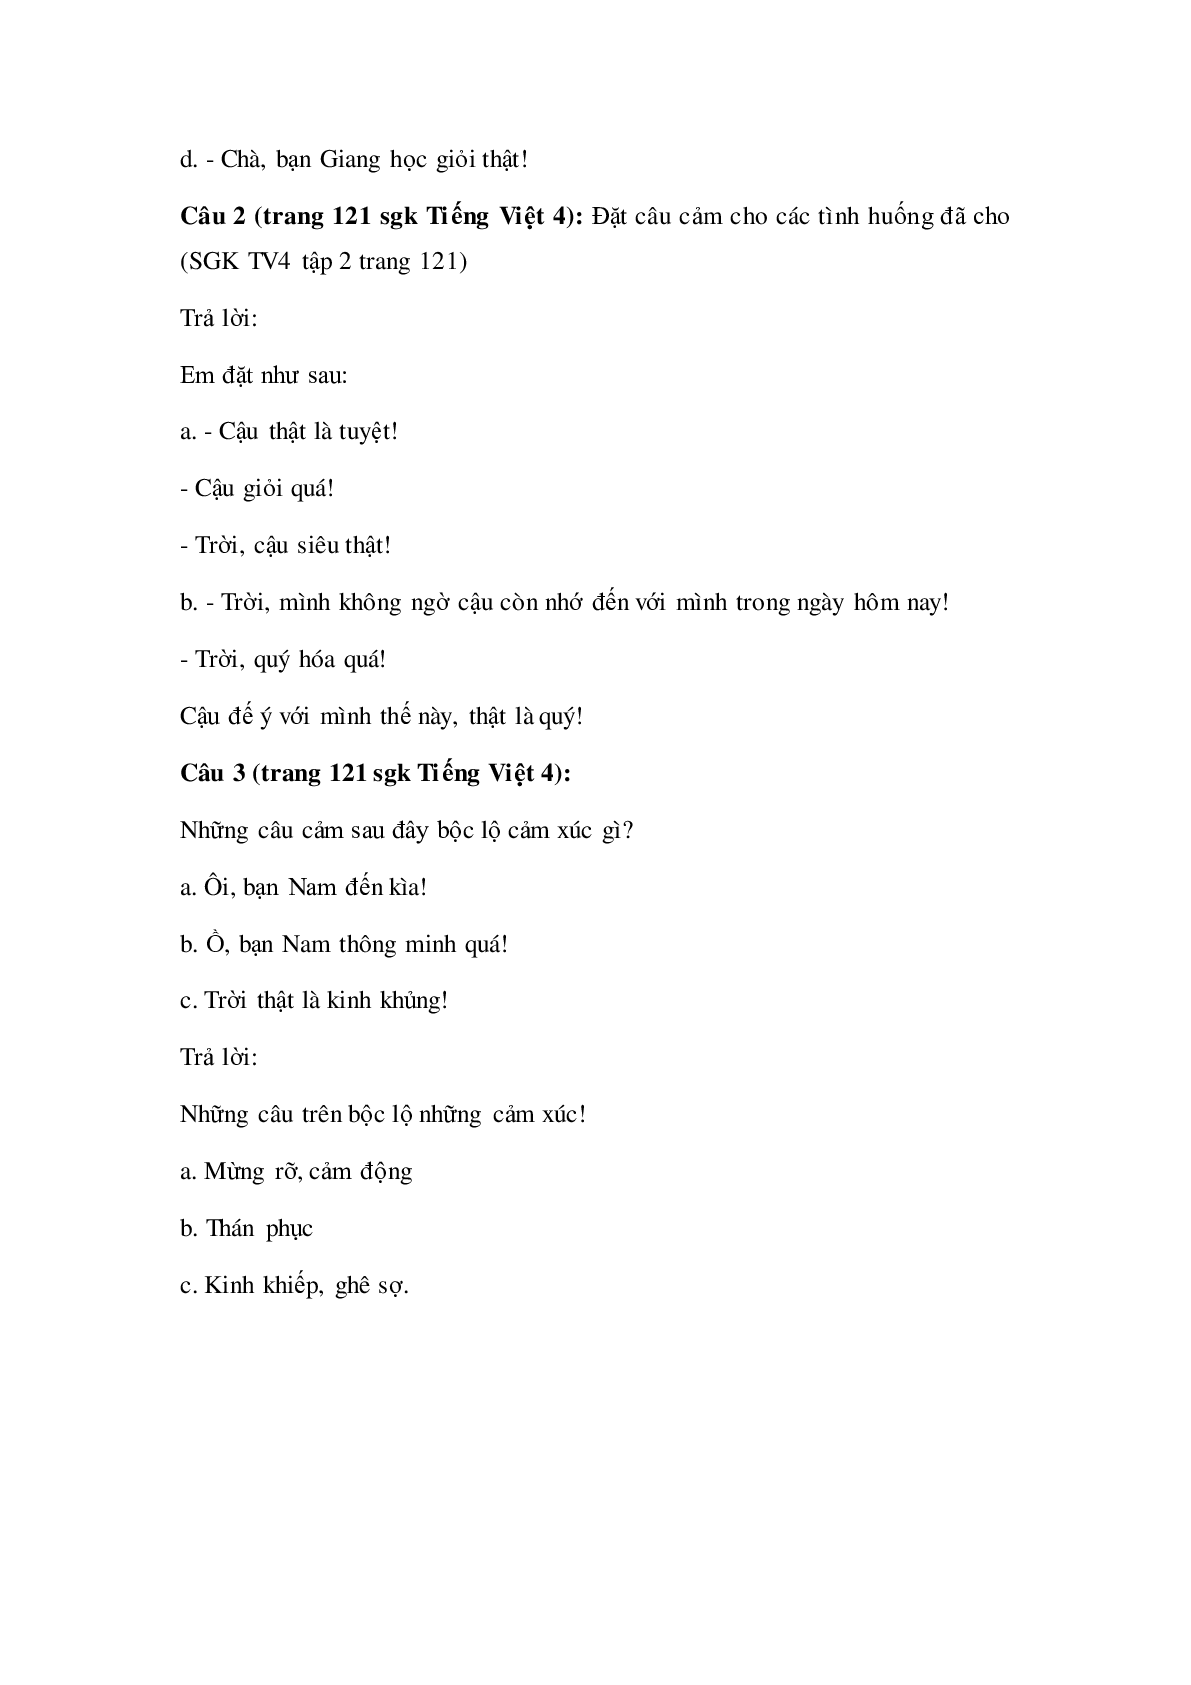 Soạn Tiếng Việt lớp 4: Luyện từ và câu: Câu cảm mới nhất (trang 2)